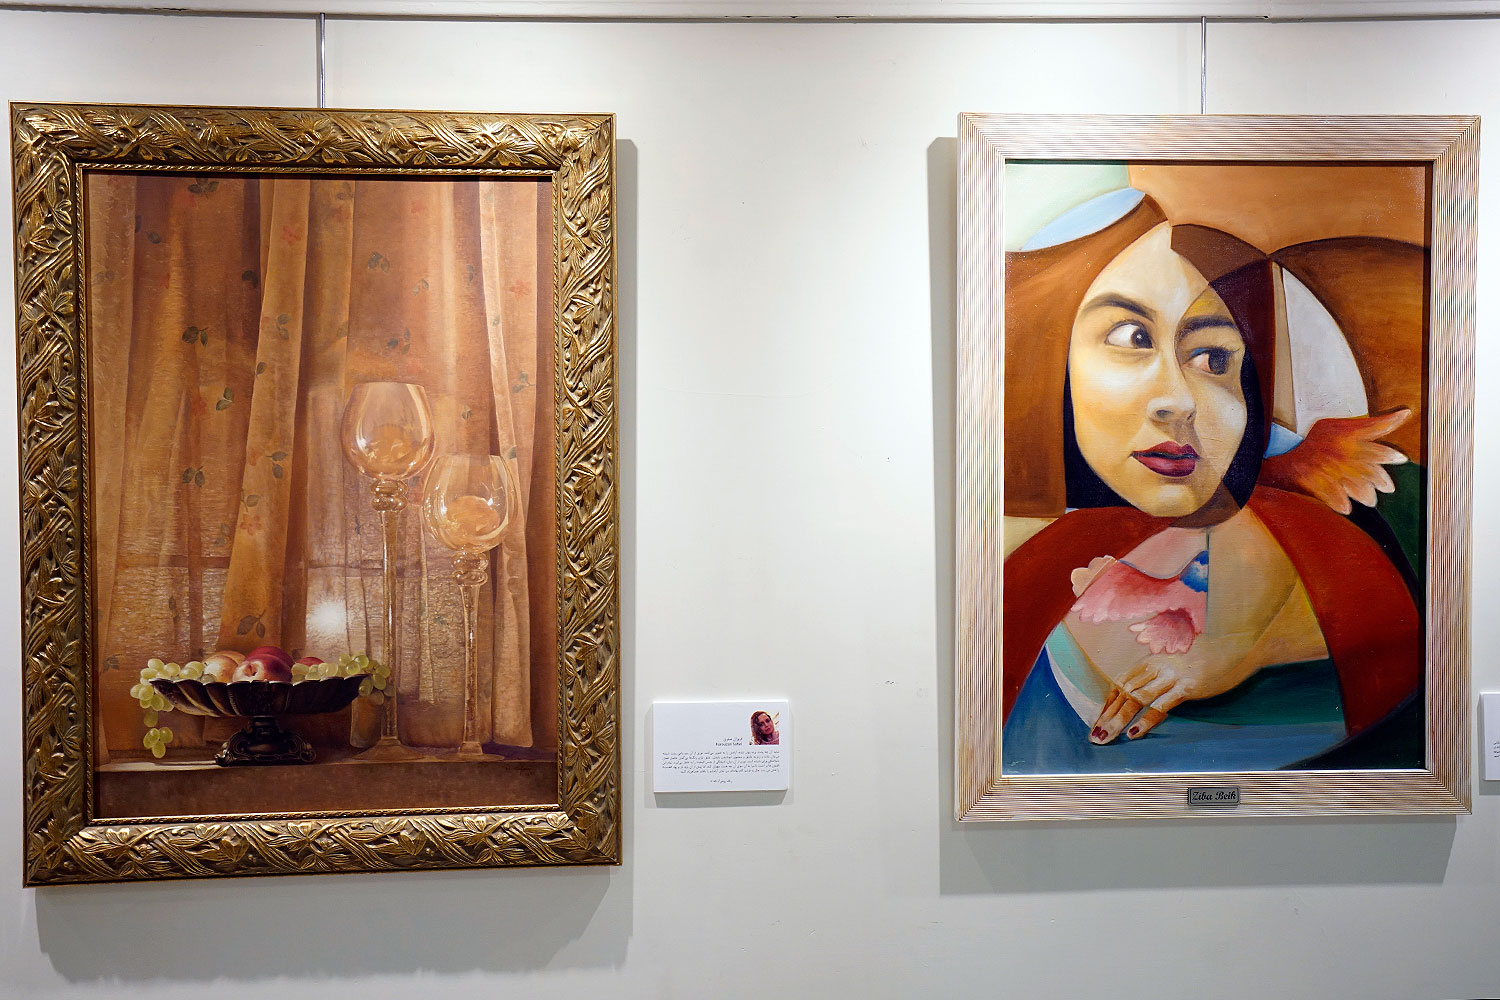 نمایشگاه گروهی نقاشی با ارائه آثاری از بیست هنرمند معاصر در نگارخانه آتشزاد